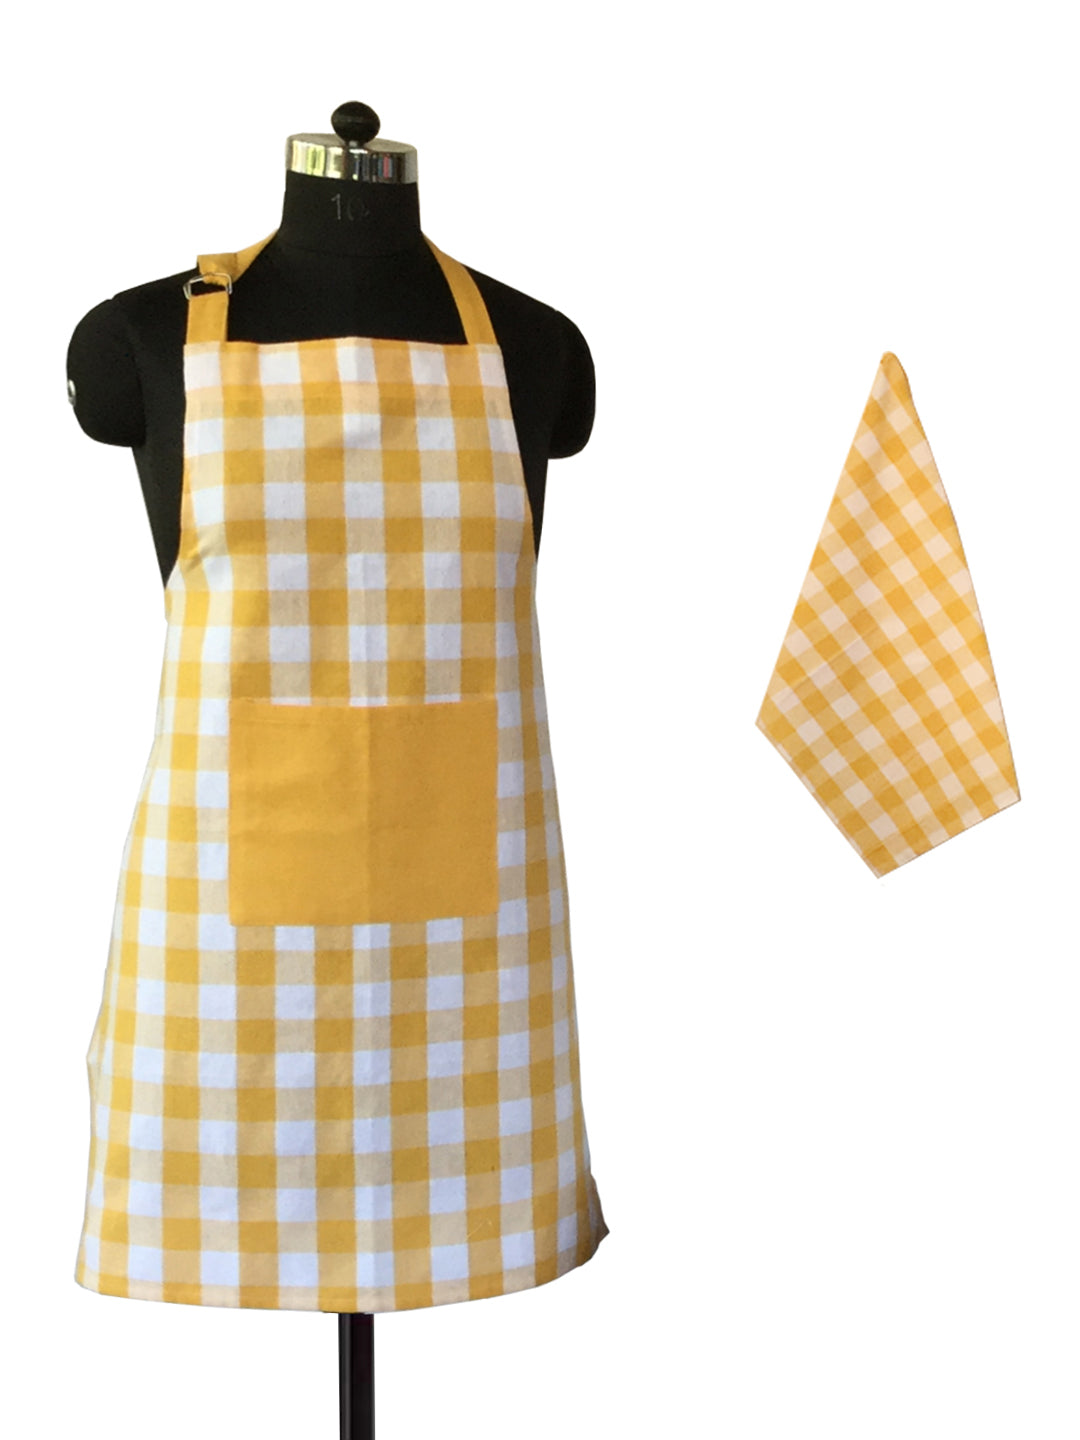 Lushomes Checks yellow Kitchen Cooking Apron Set for Women, apron for men, cooking aprons for women, kitchen apron for men, aprons, aprin (2 Pc Set, Kitchen T 40 x 60 cm, Apron 60 x 80 cms)